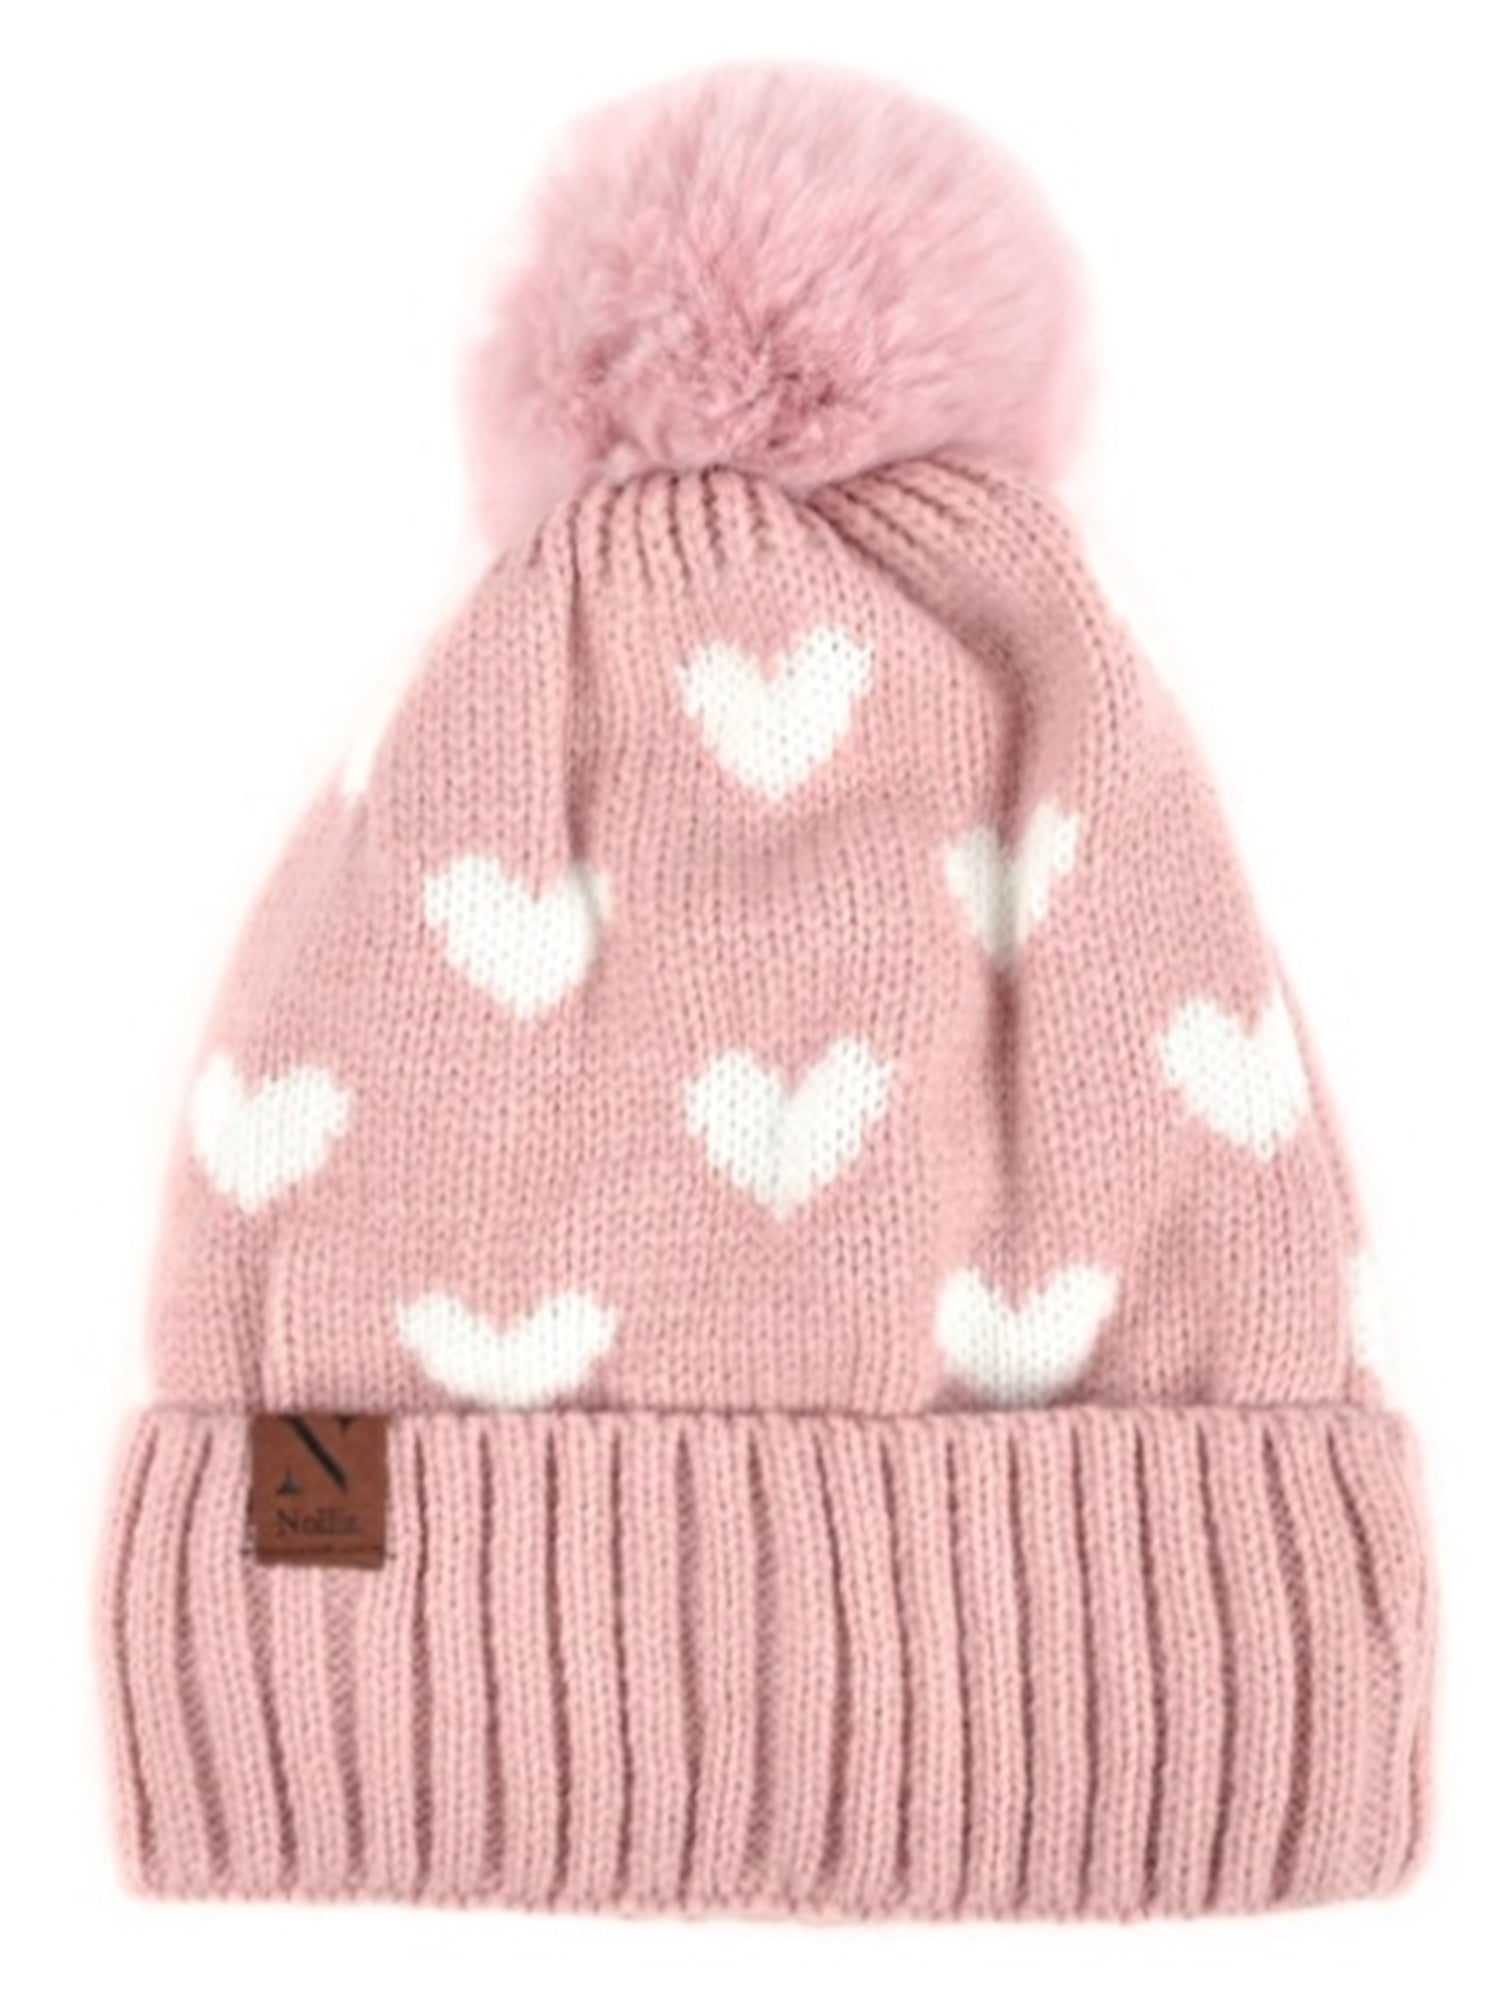 Monkey Beanie Hat Pom Poms Pink Heart Nose Knit Brown Girls Winter  Valentine's